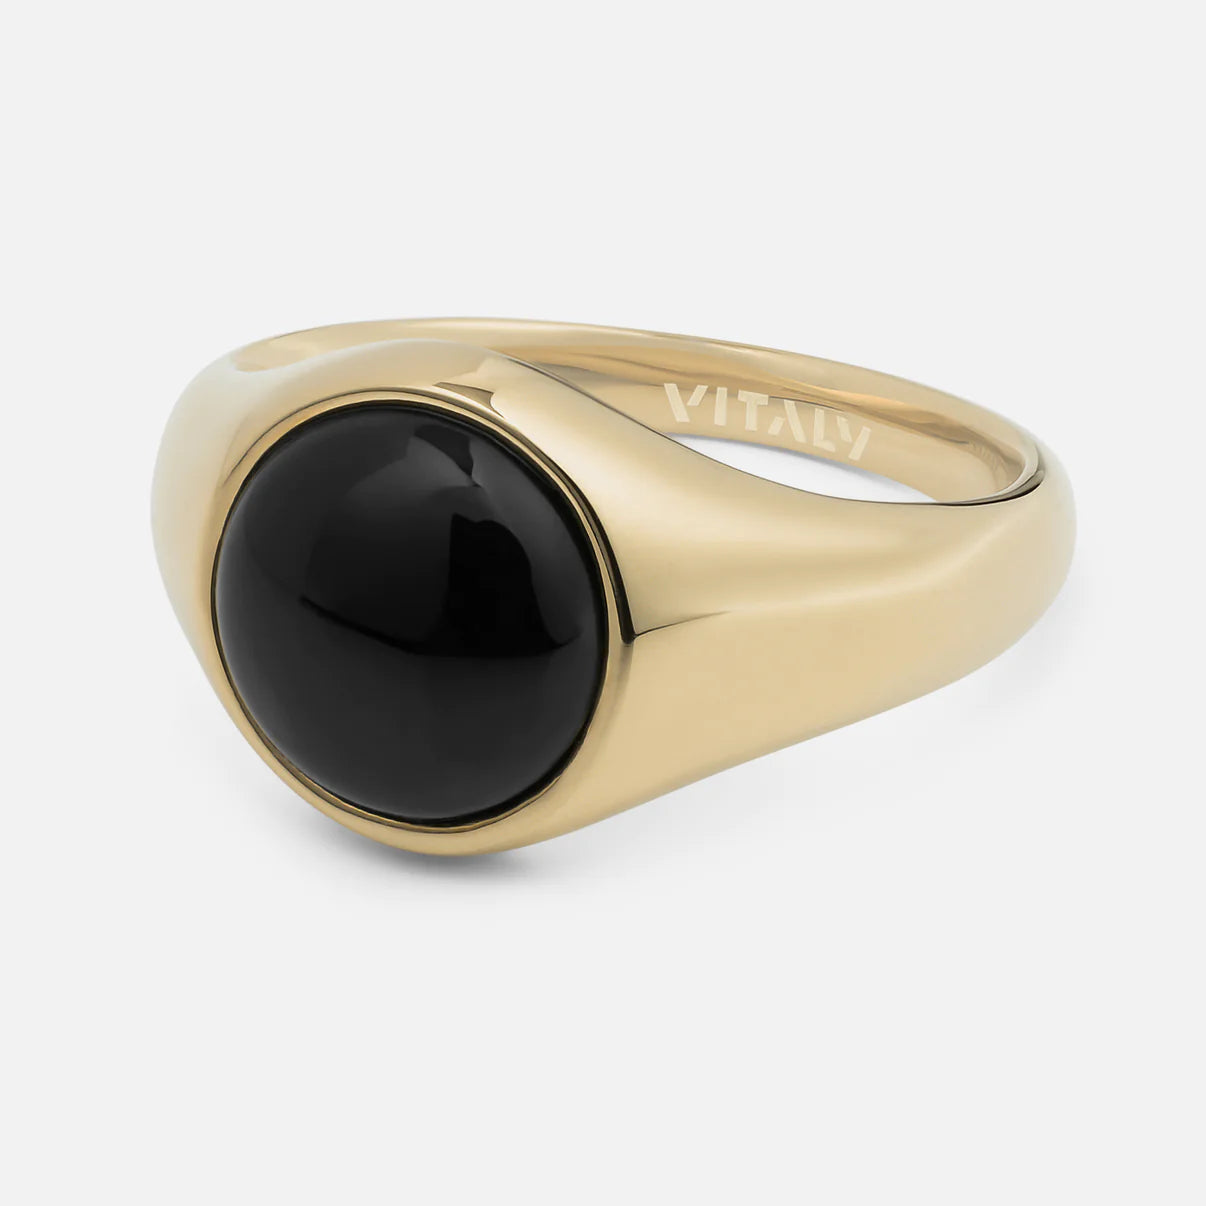 Vitaly Bond Ring 'Gold/Onyx